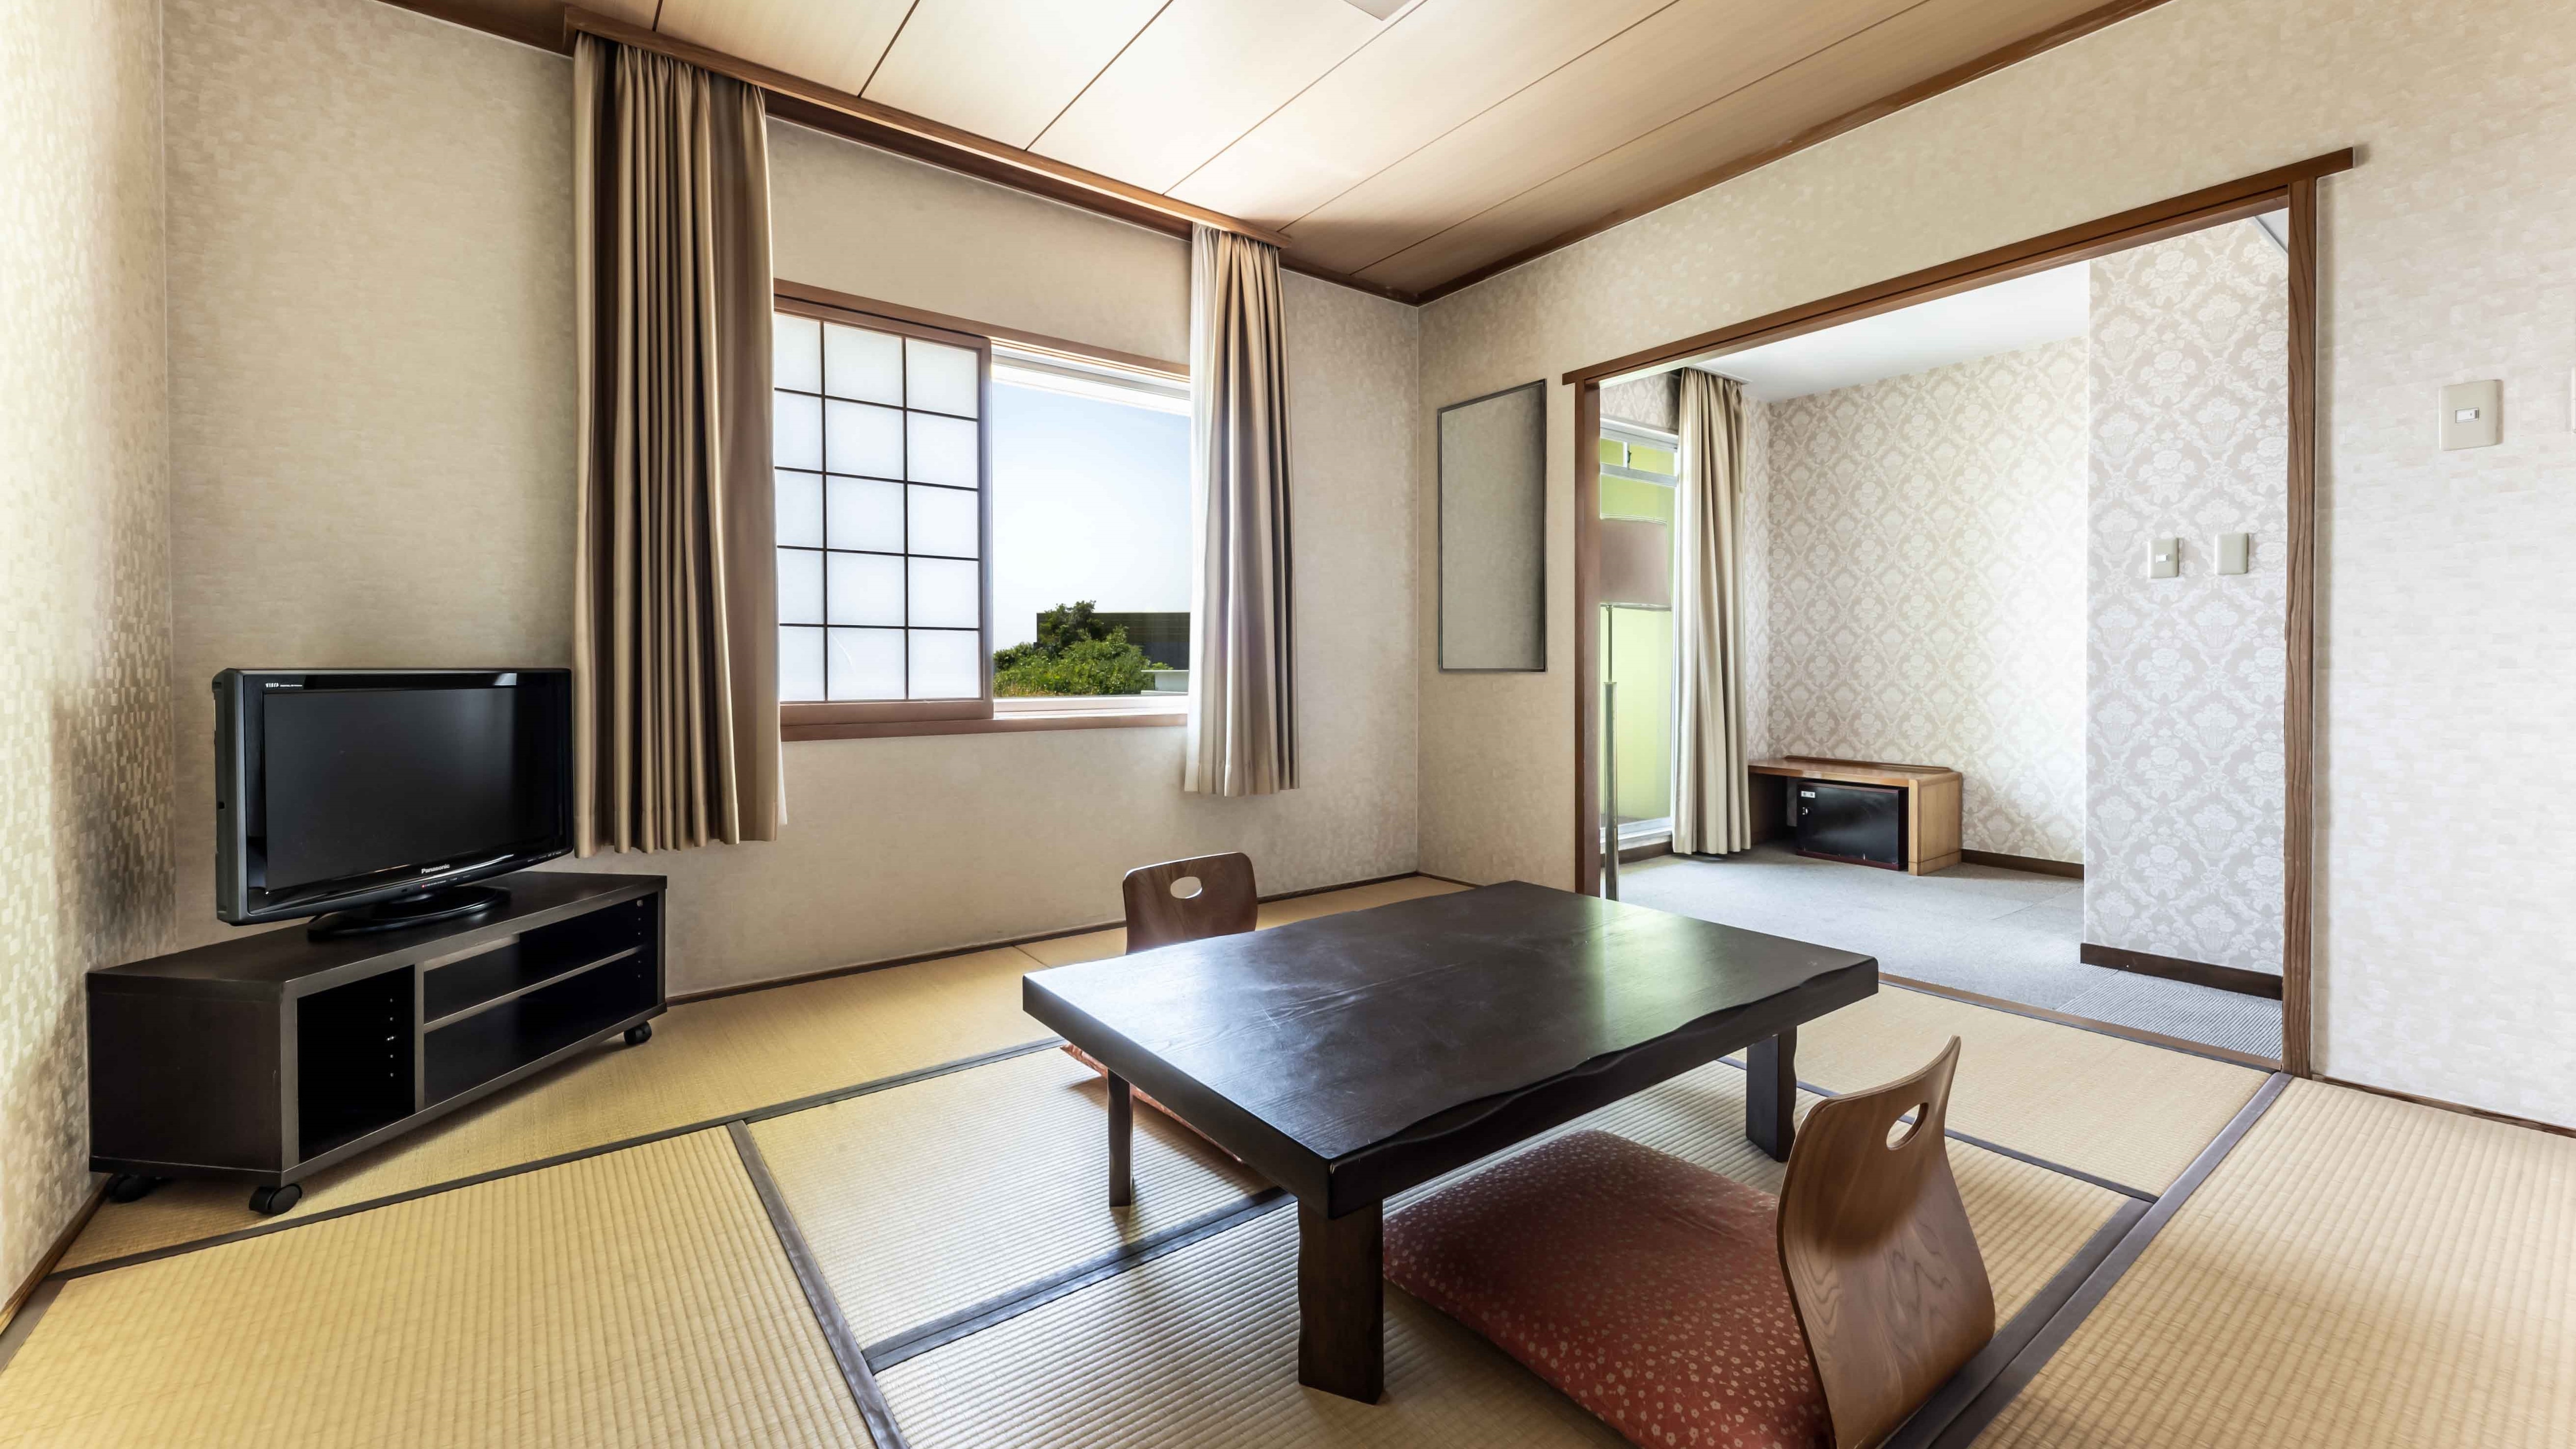 East building 1st floor Japanese-style room 8 tatami mats [sea floor]